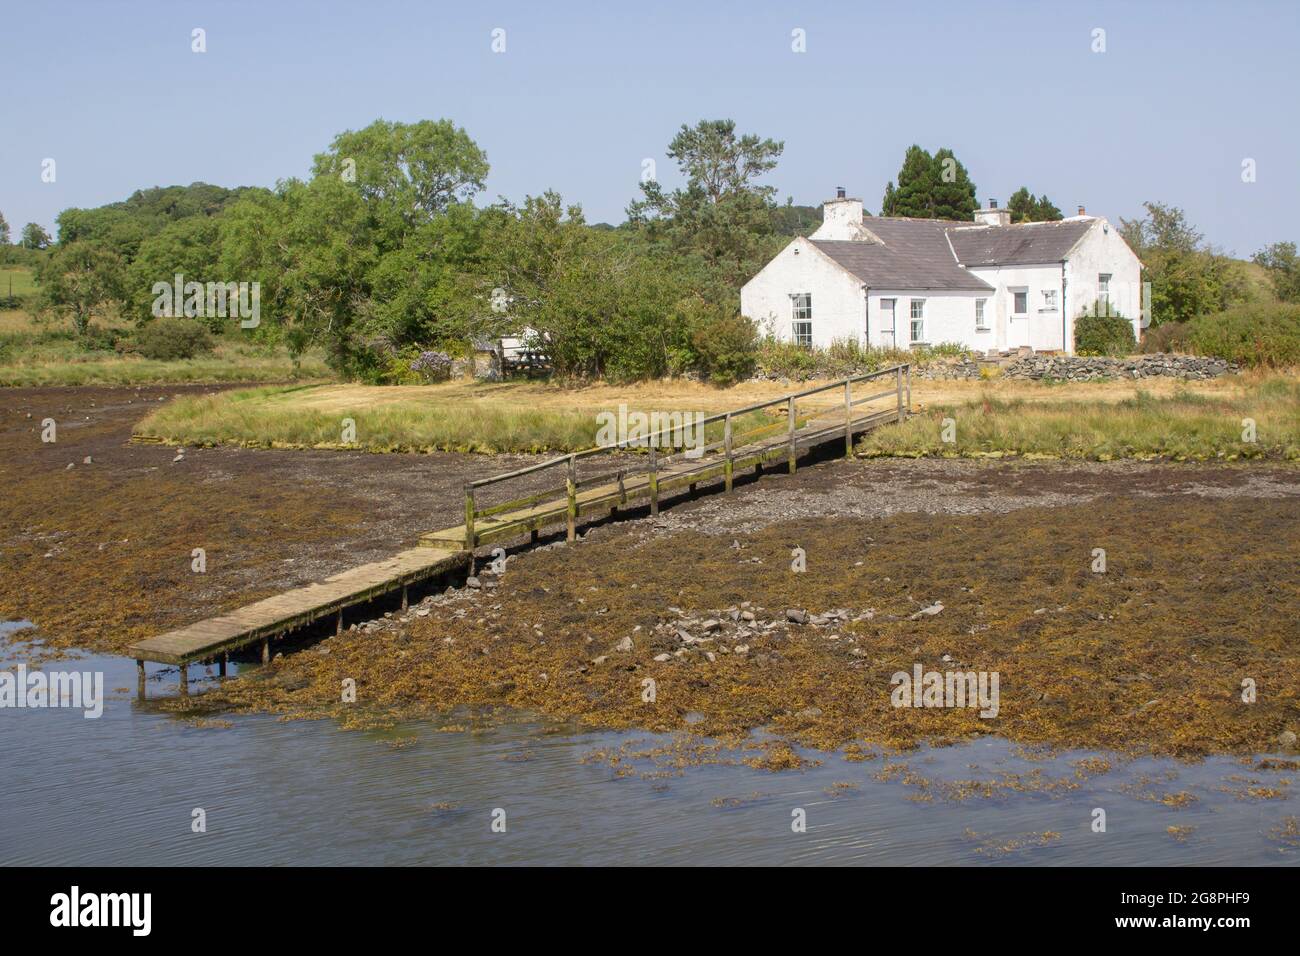 21 luglio 2021 UN piccolo bungalow bianco con il proprio molo di legno si trova sul bordo dell'acqua vicino a Gibbs Island su Strangford Lough nella contea in basso a nord i Foto Stock